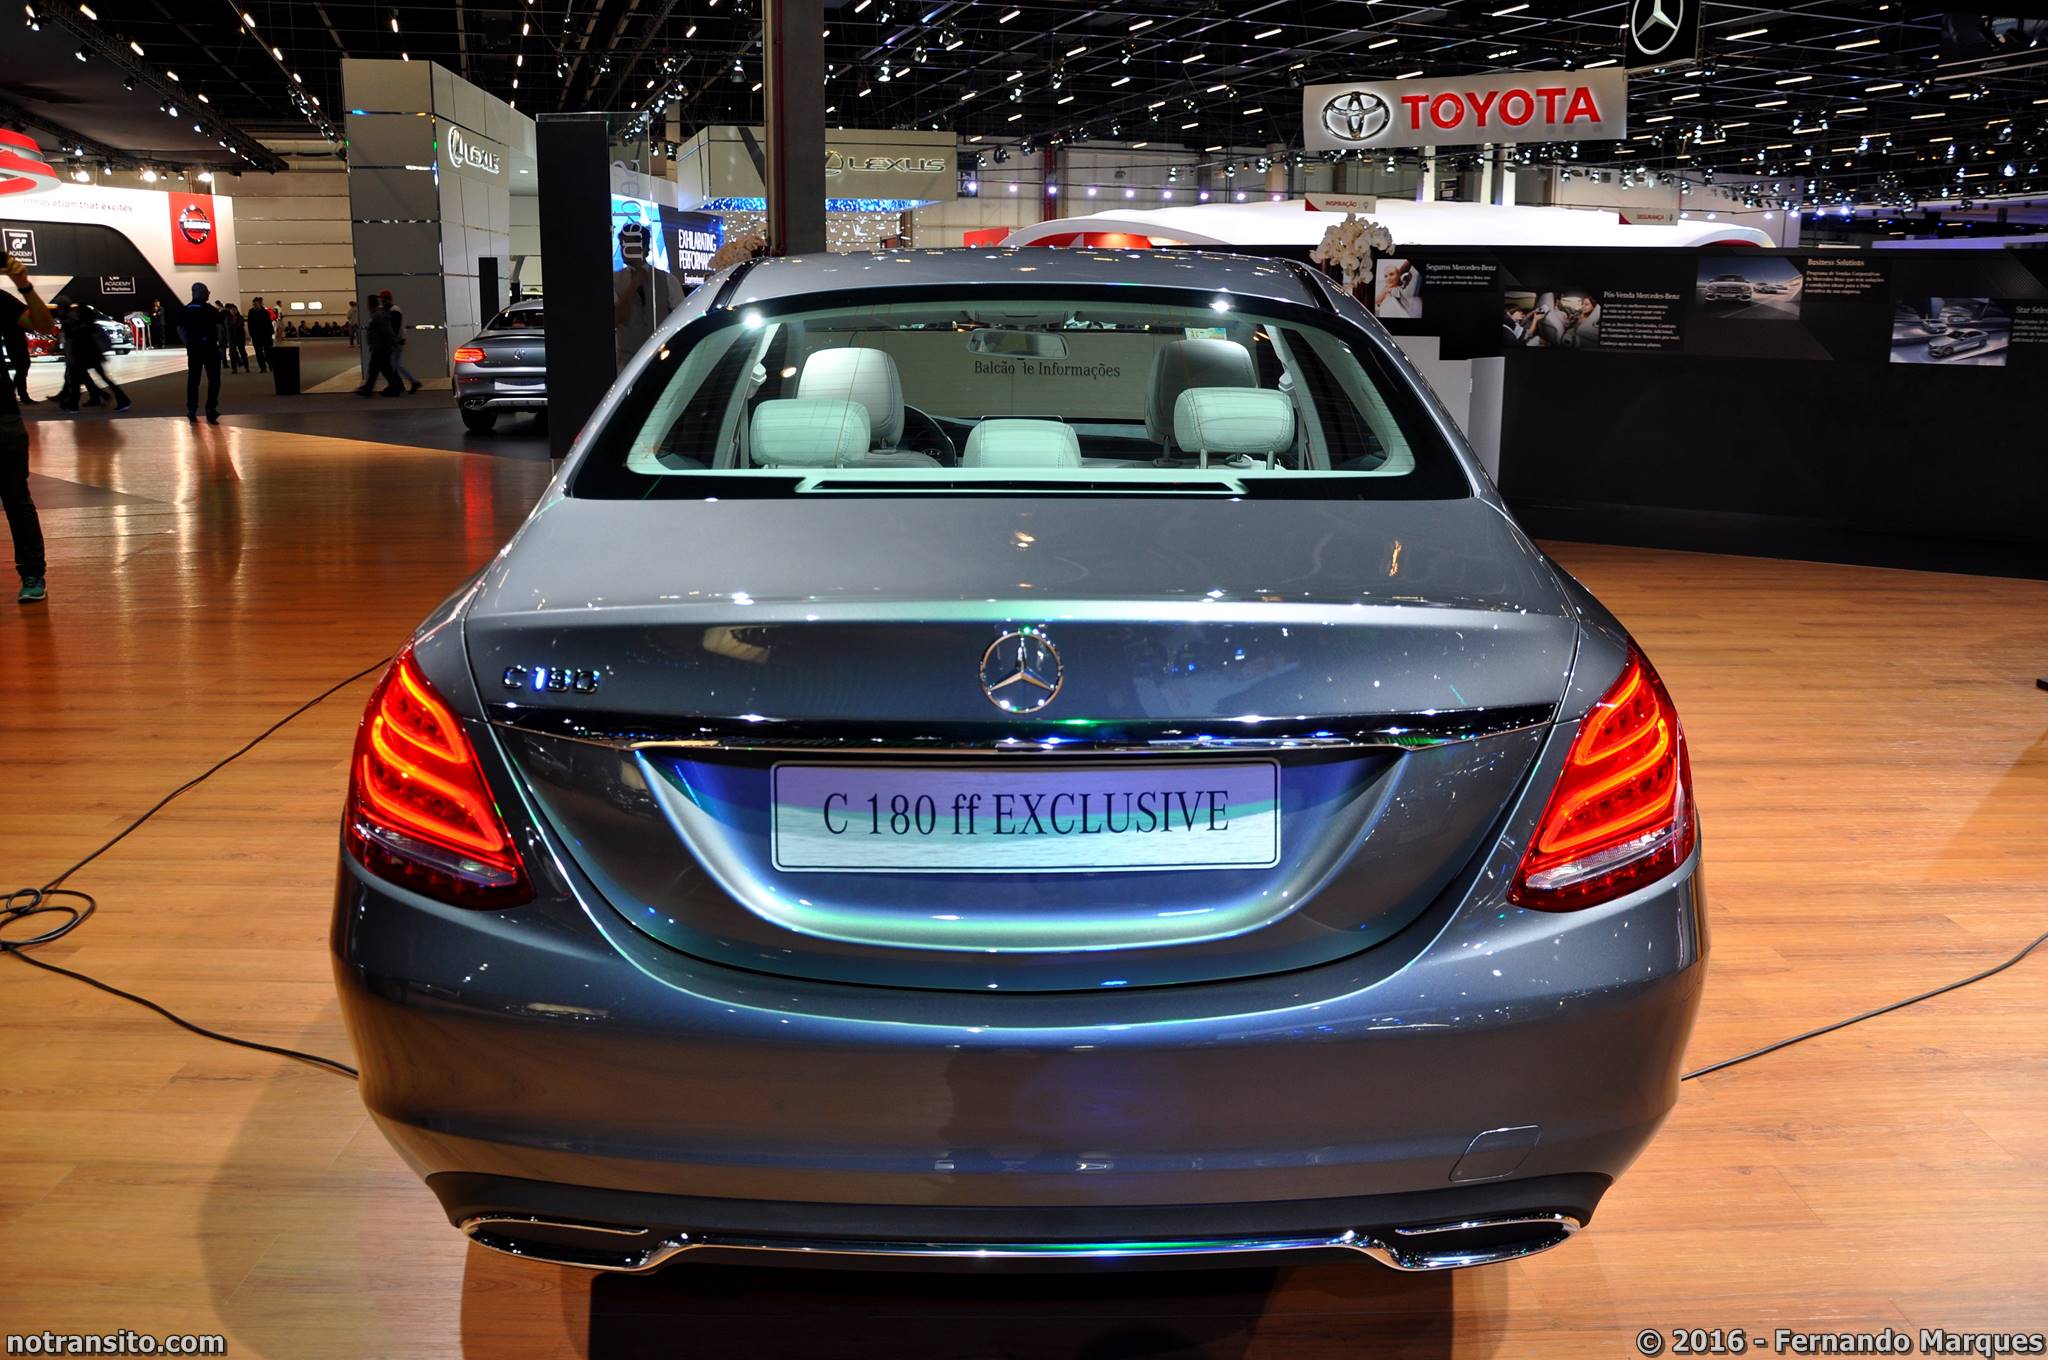 Mercedes-Benz C 180 ff Exclusive Salão do Automóvel 2016